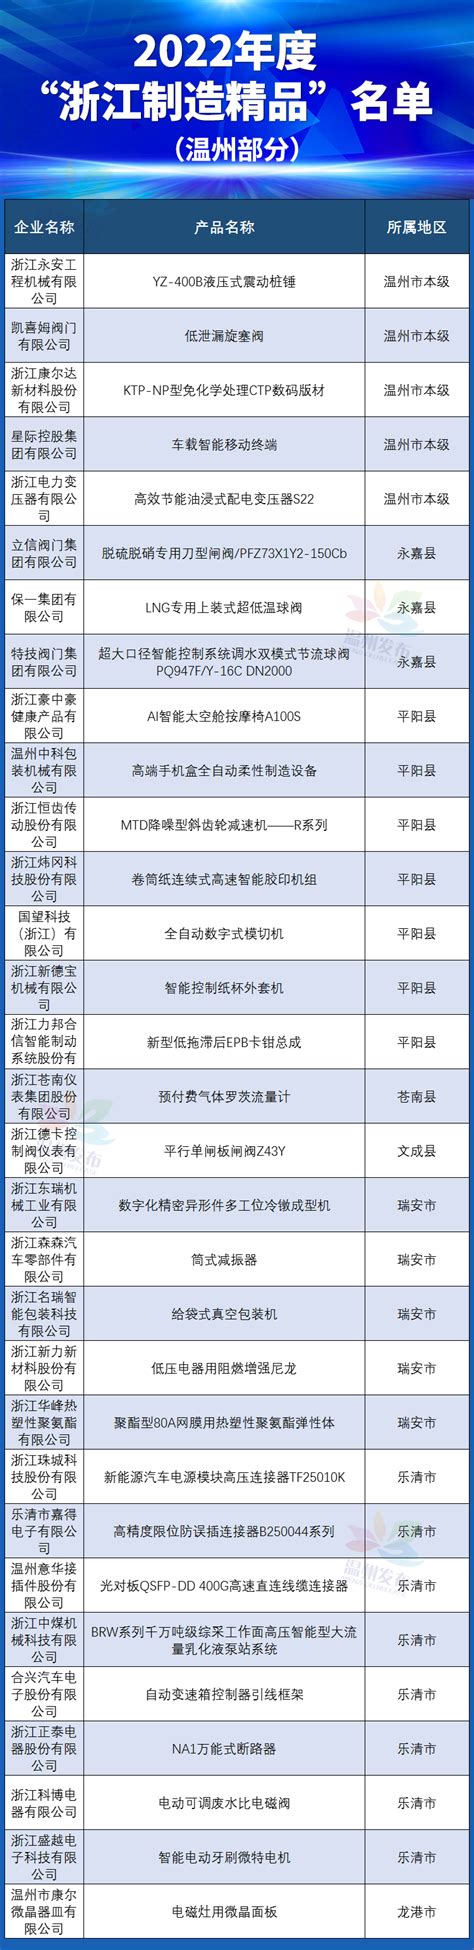 滨江区7家企业产品入选2022年度“浙江制造精品”名单